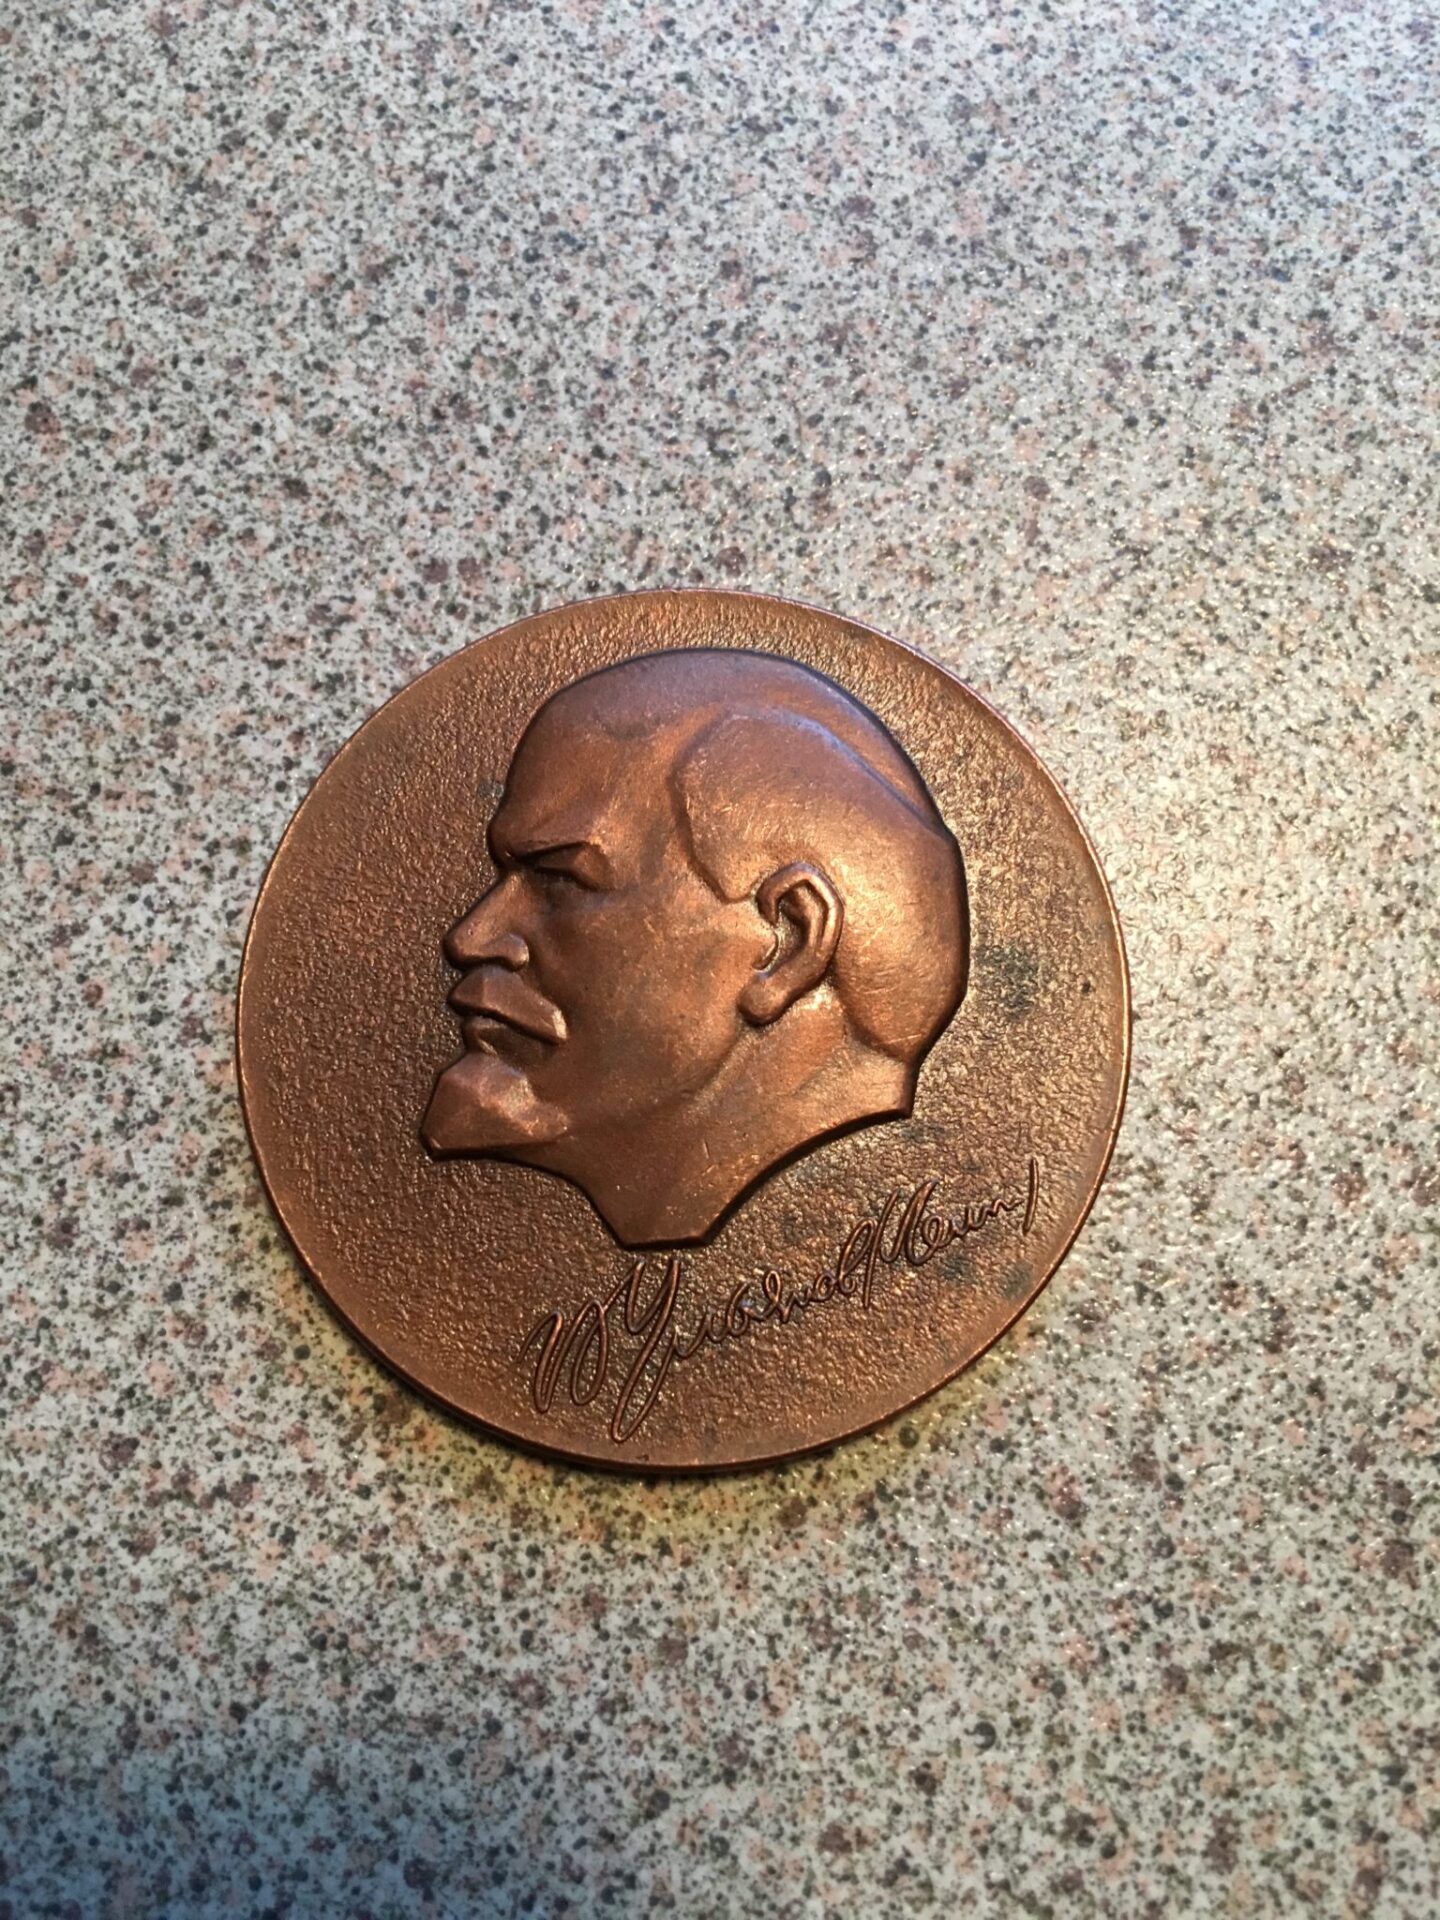 Lenin medalje 1917-1977 (60-års dagen for revolutionen) 300 kr